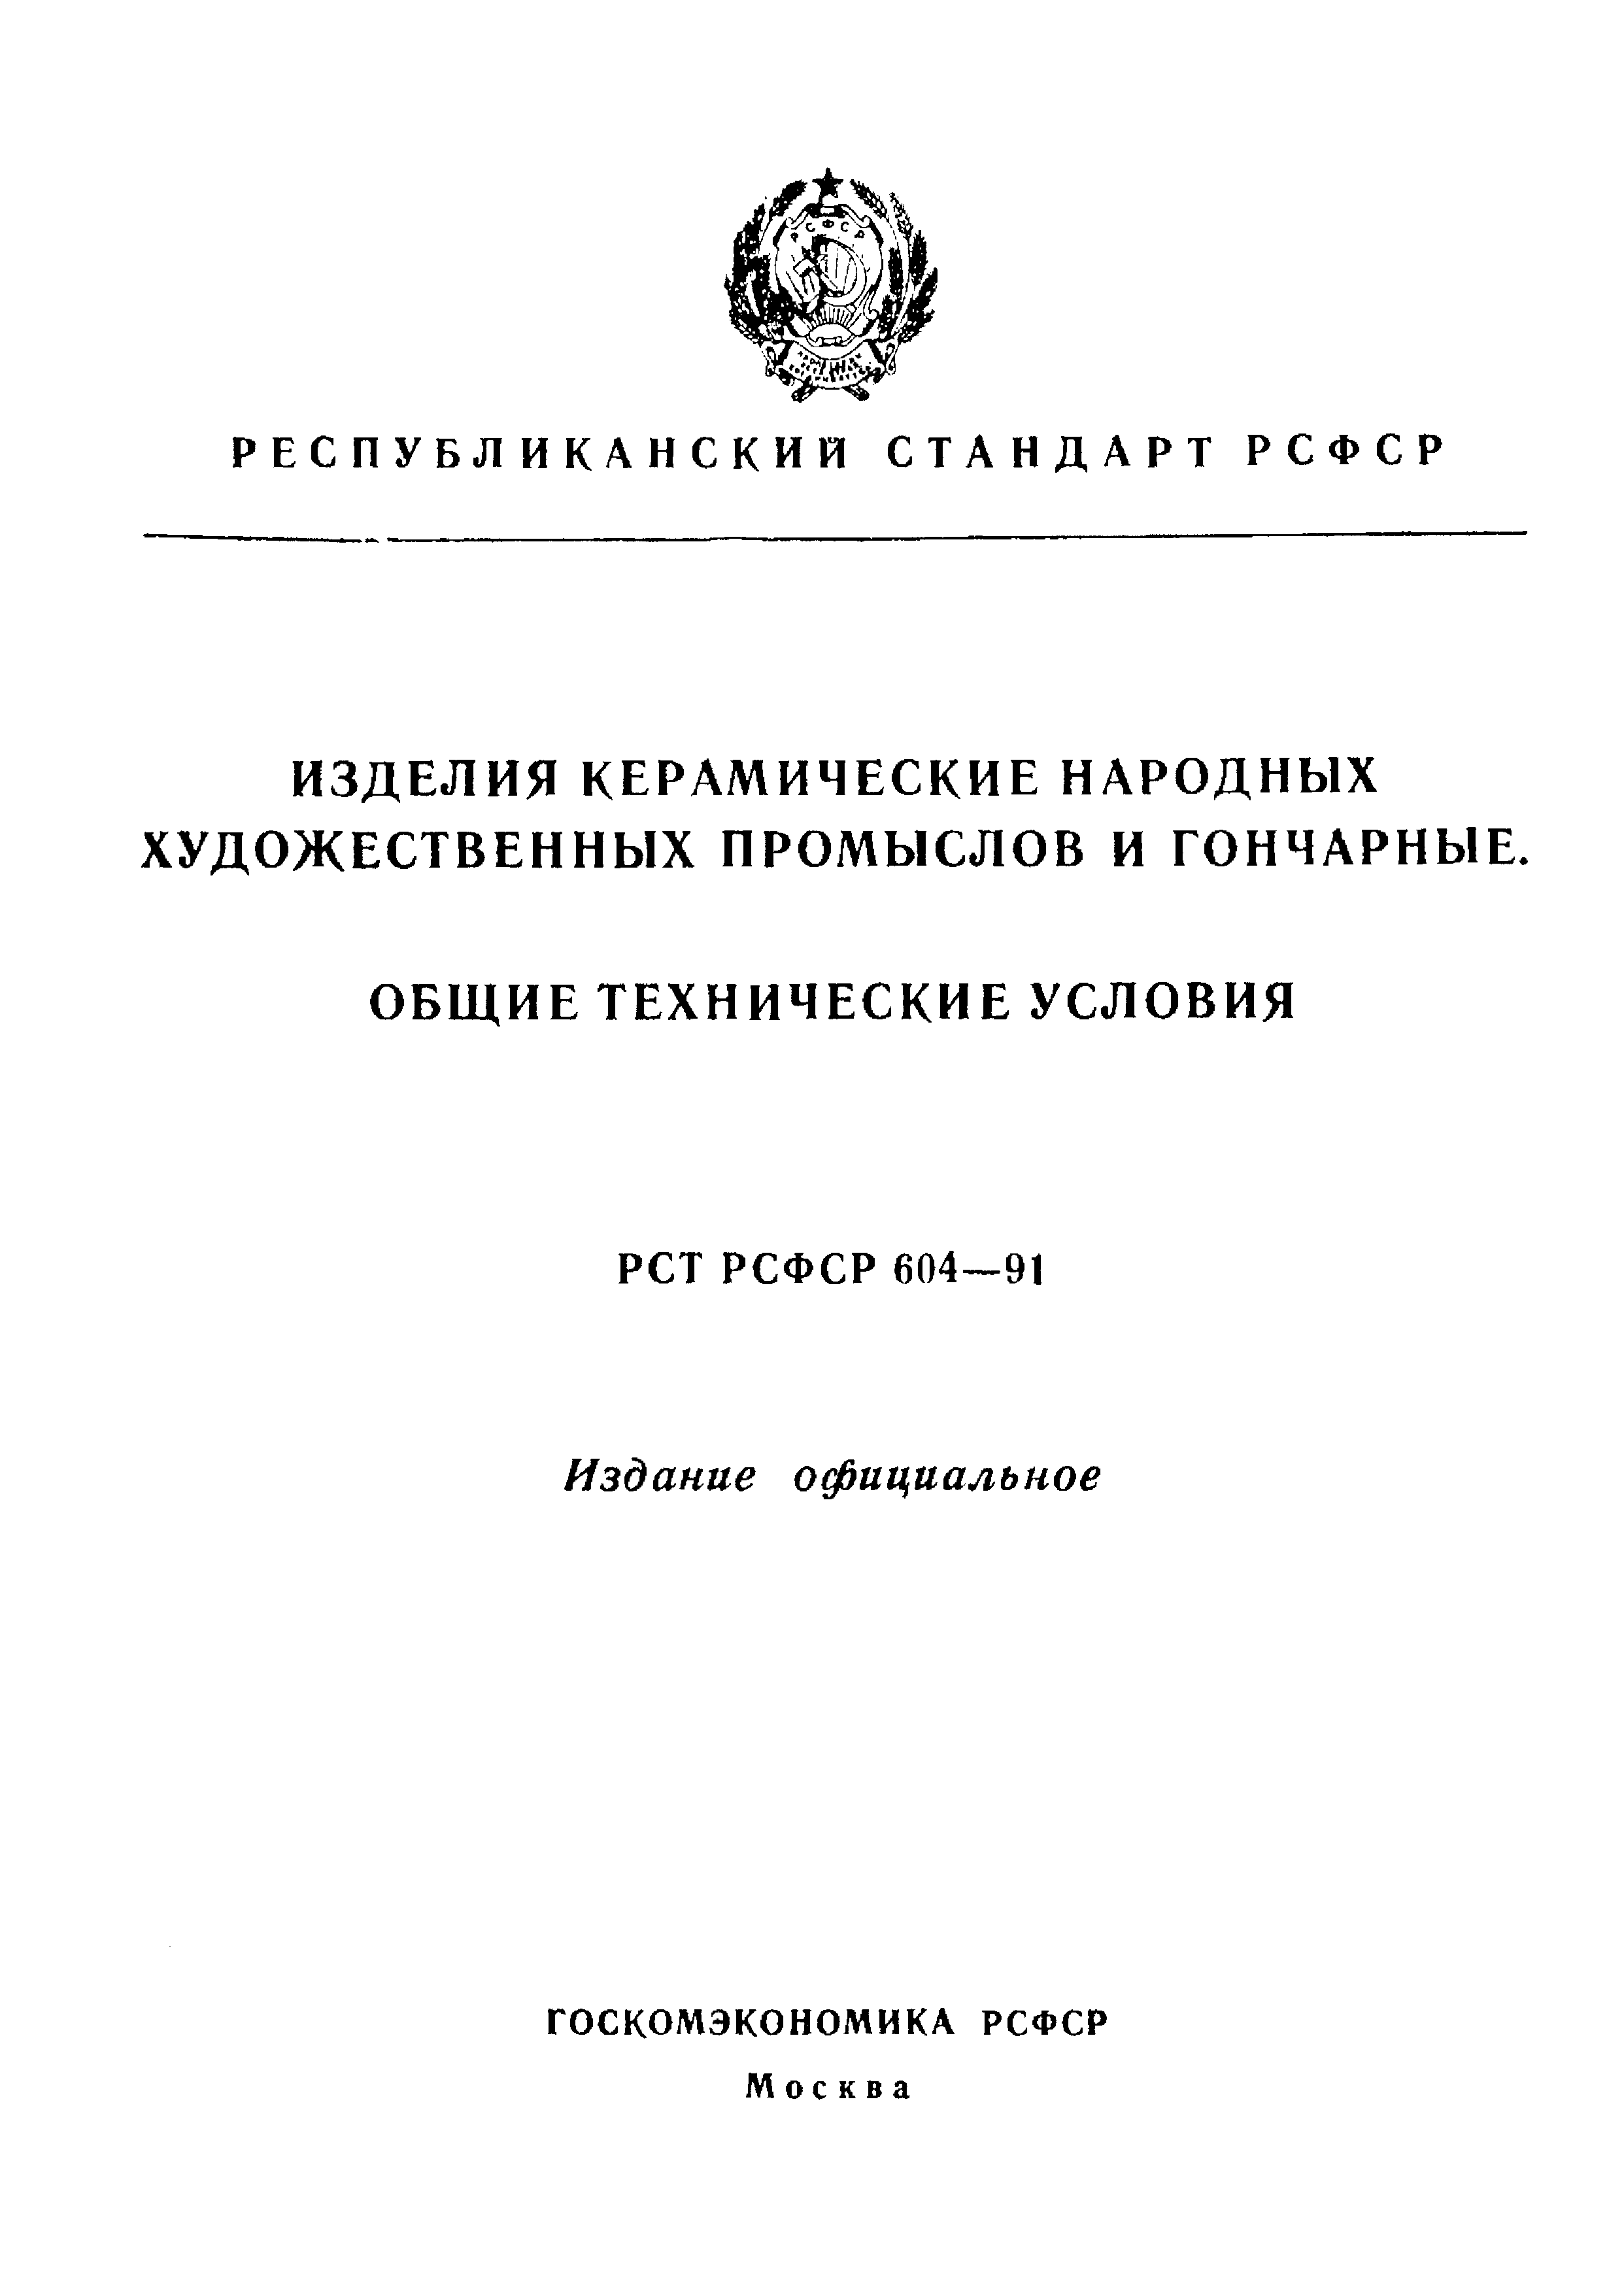 РСТ РСФСР 604-91